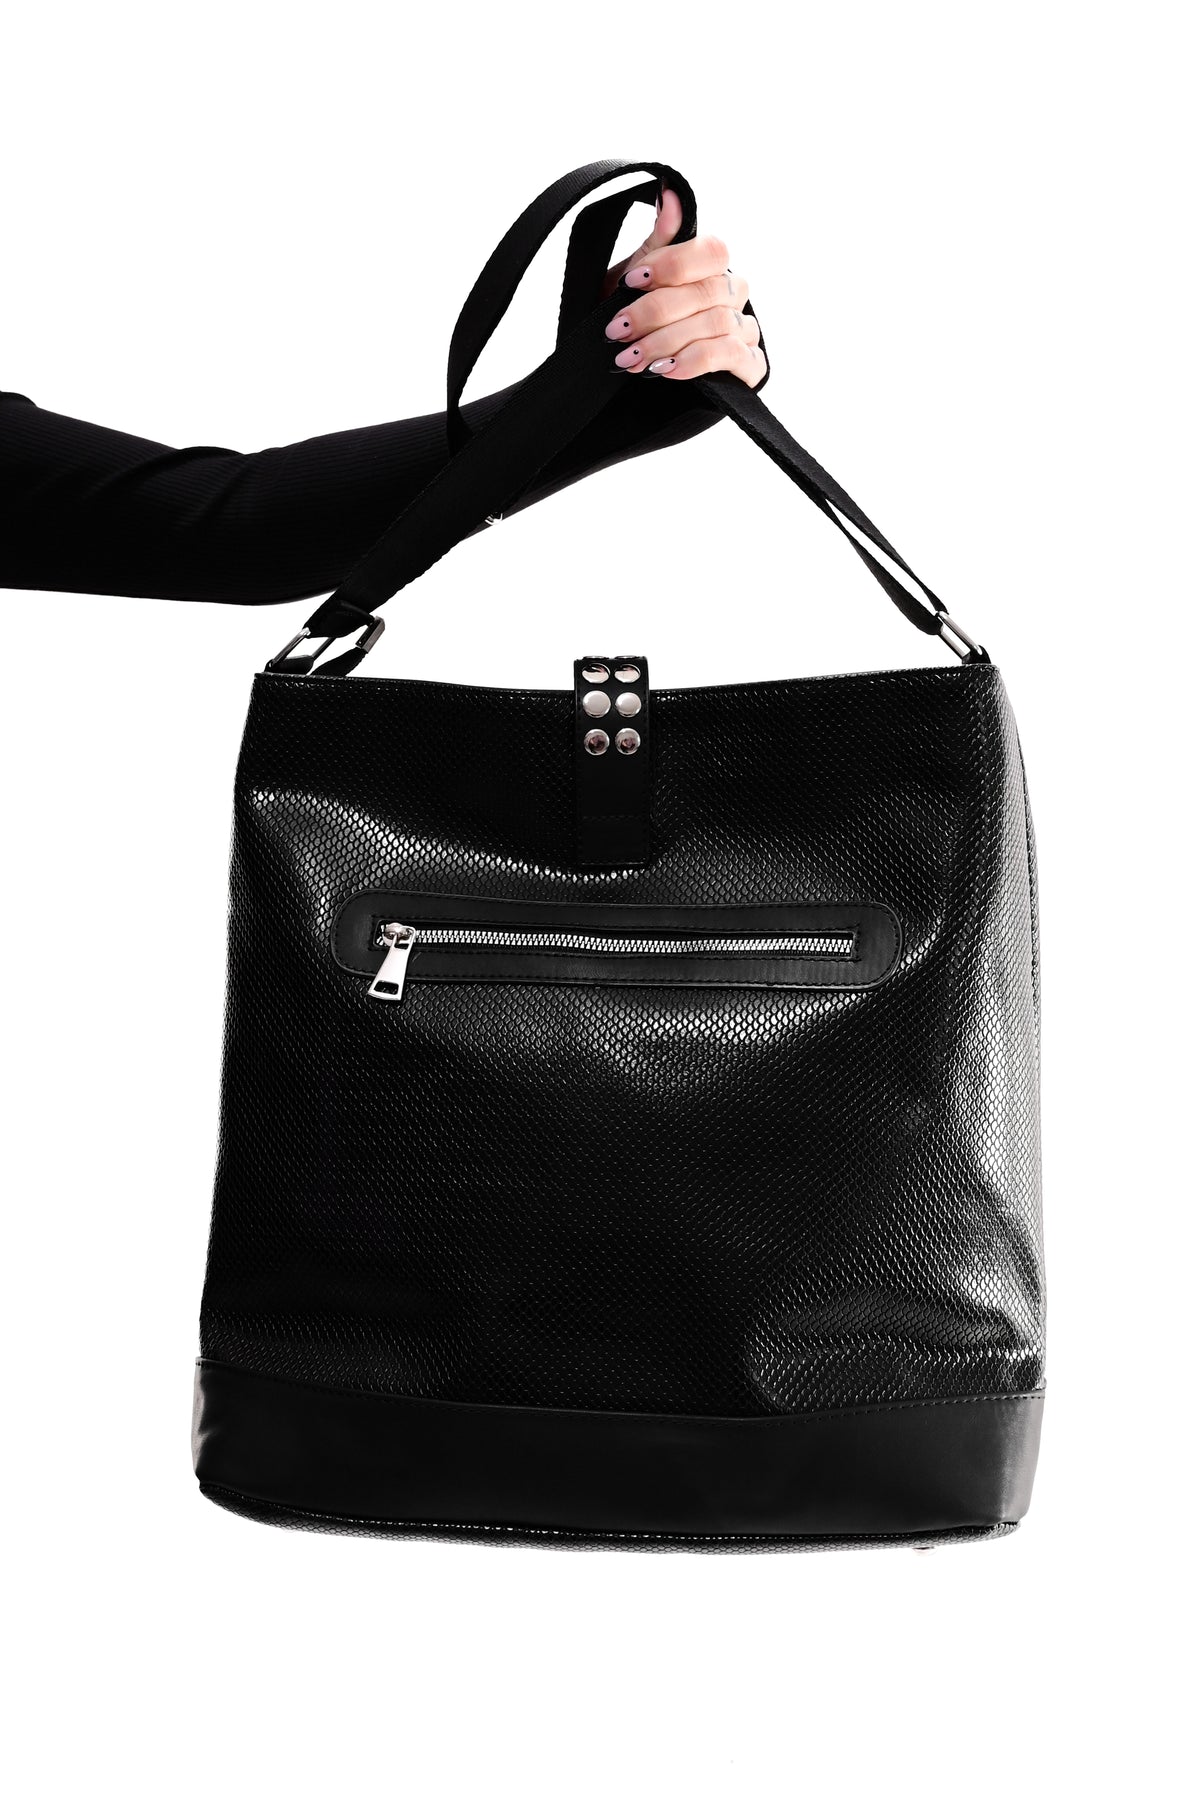 Vex Shoulder Bag - Apple Leather